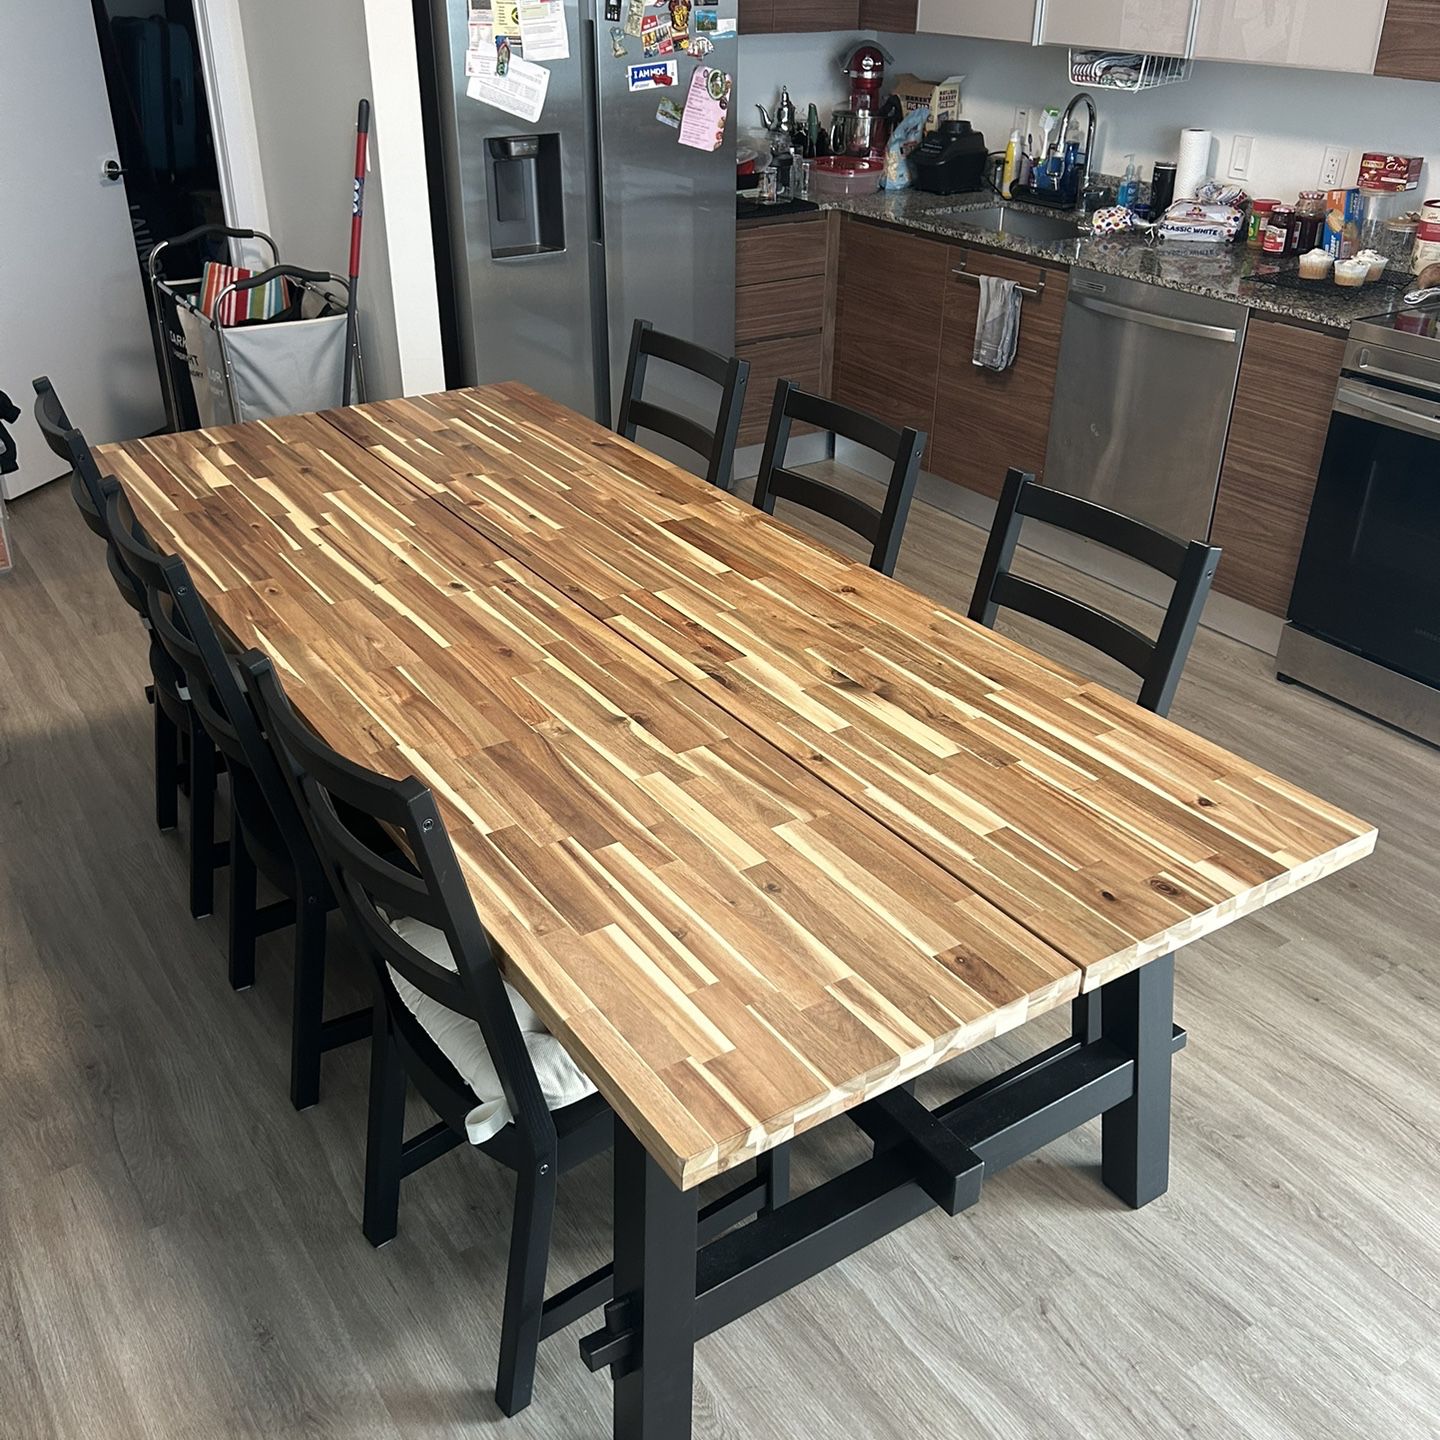 IKEA Kitchen Table